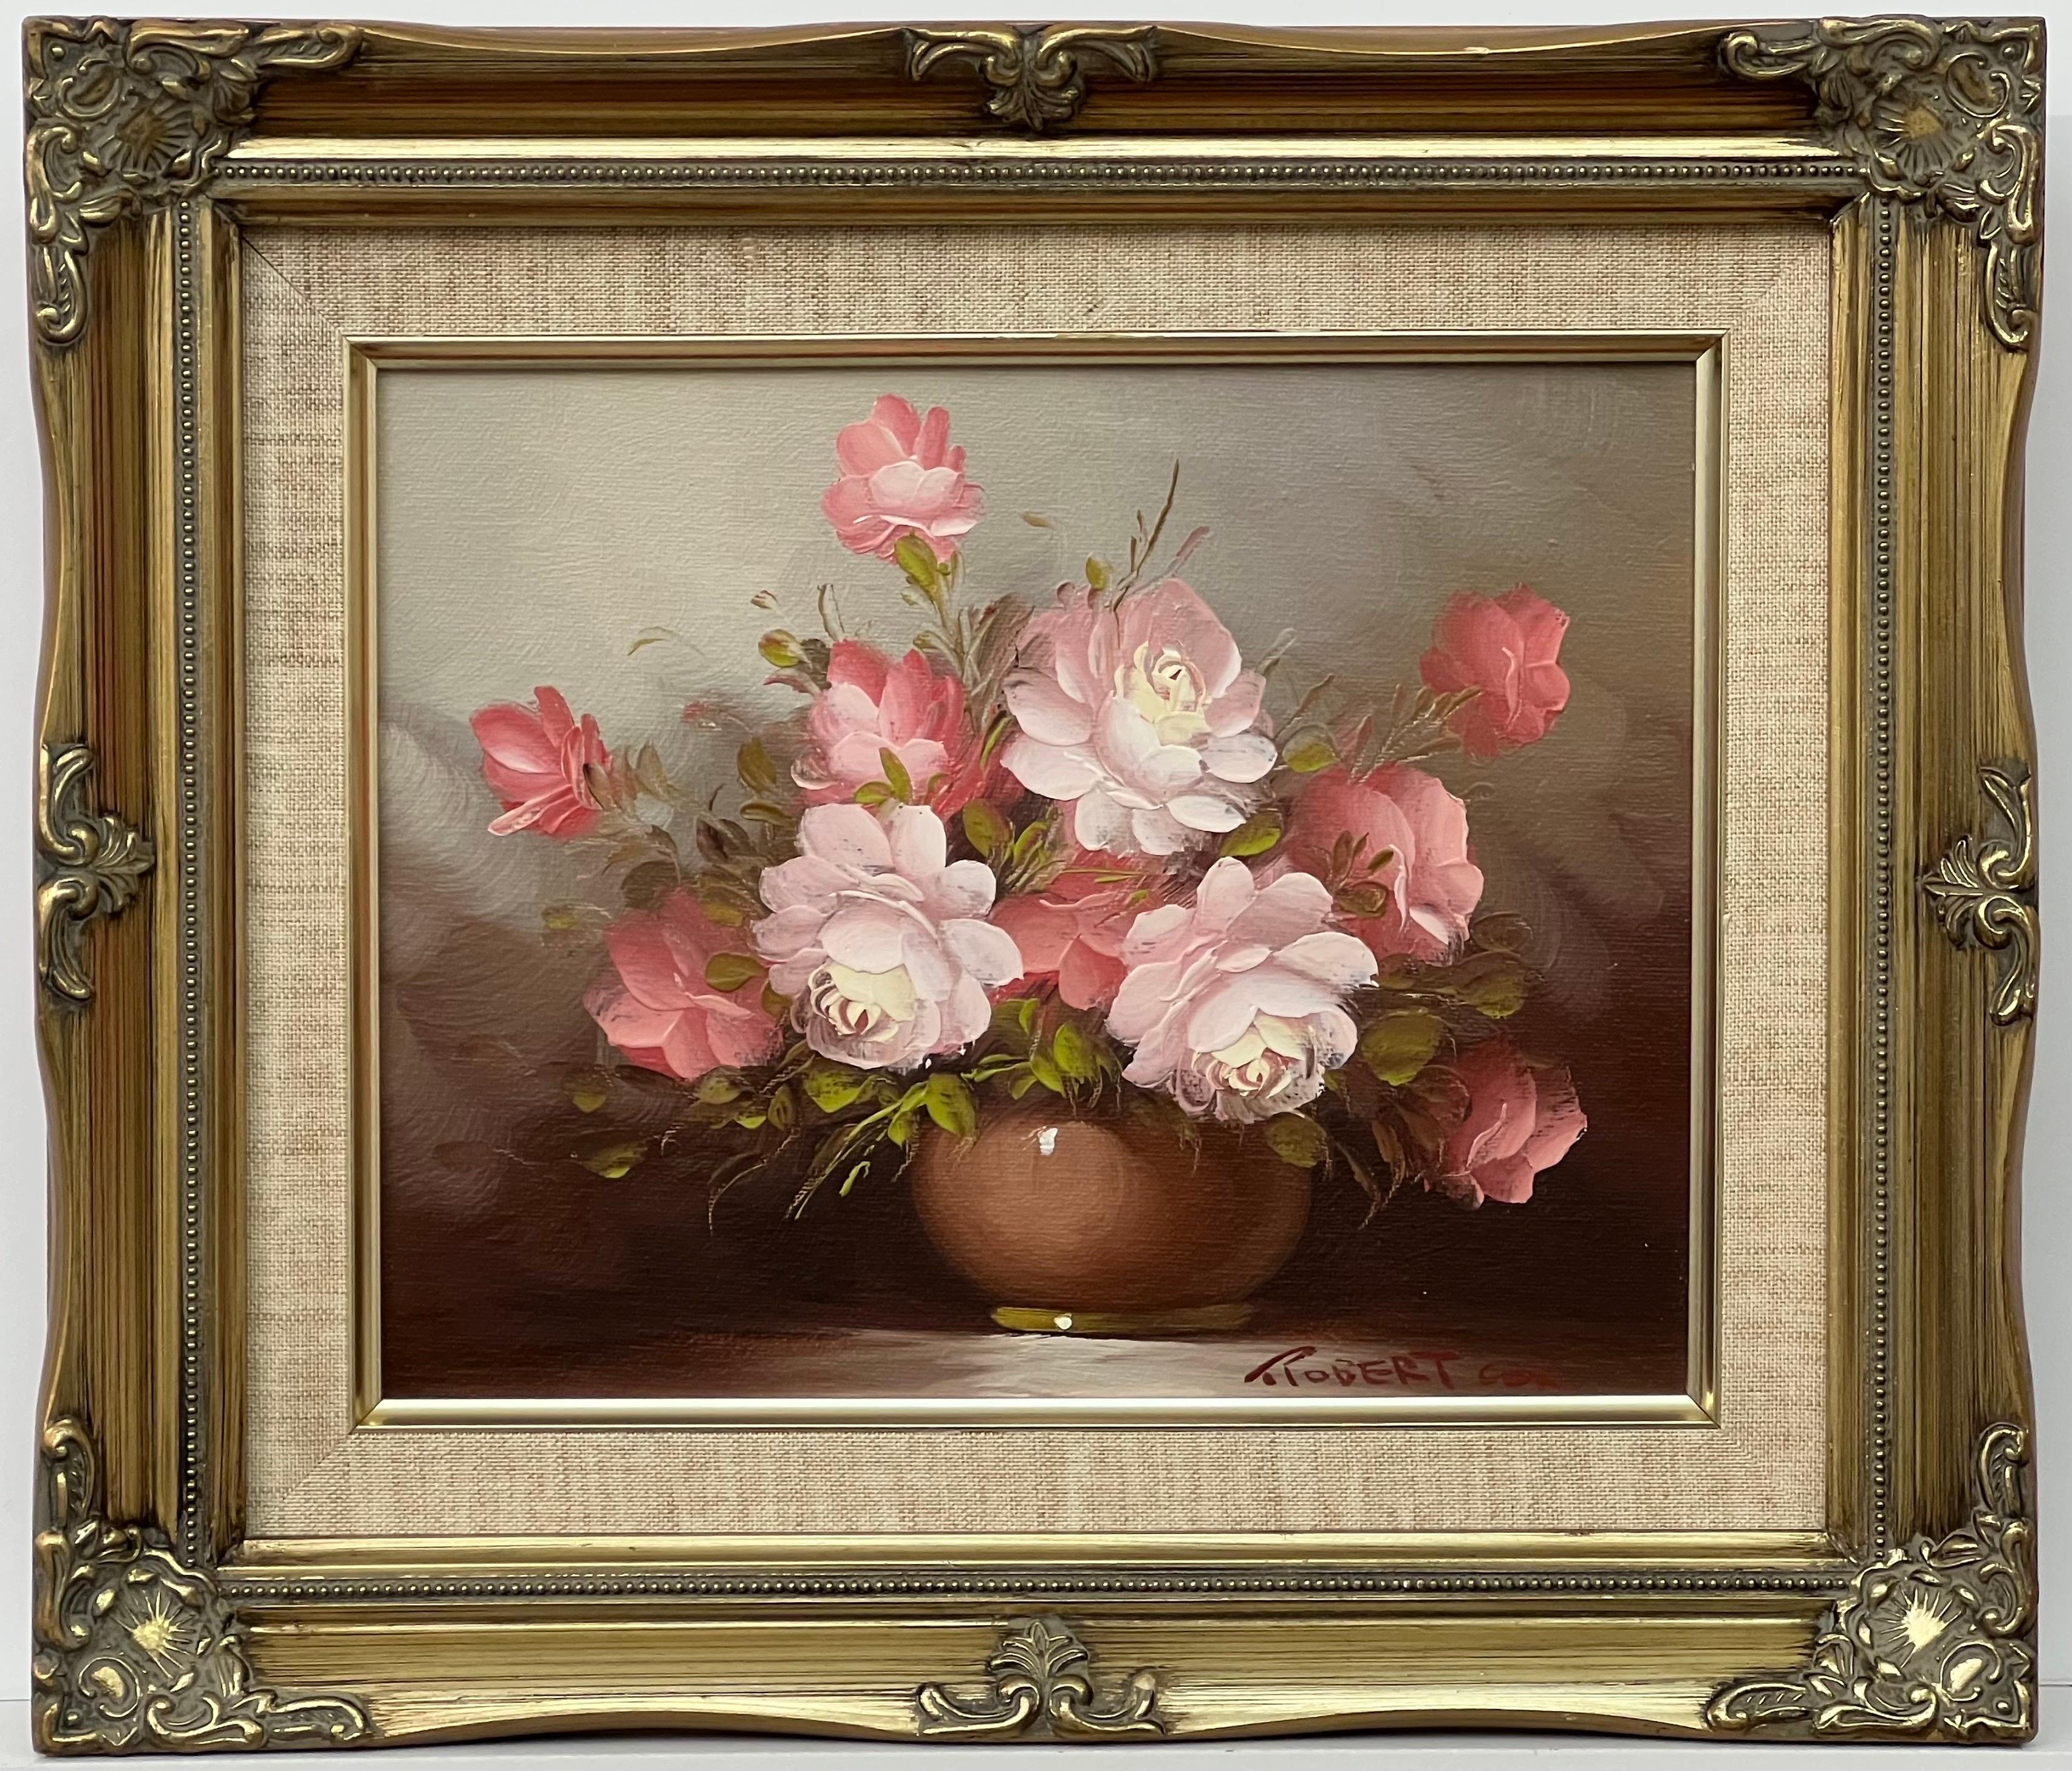 Stillleben einer Vase aus rosa-roten und weißen Rosen von amerikanischem Künstler des 20. Jahrhunderts (Amerikanischer Impressionismus), Painting, von Robert Cox